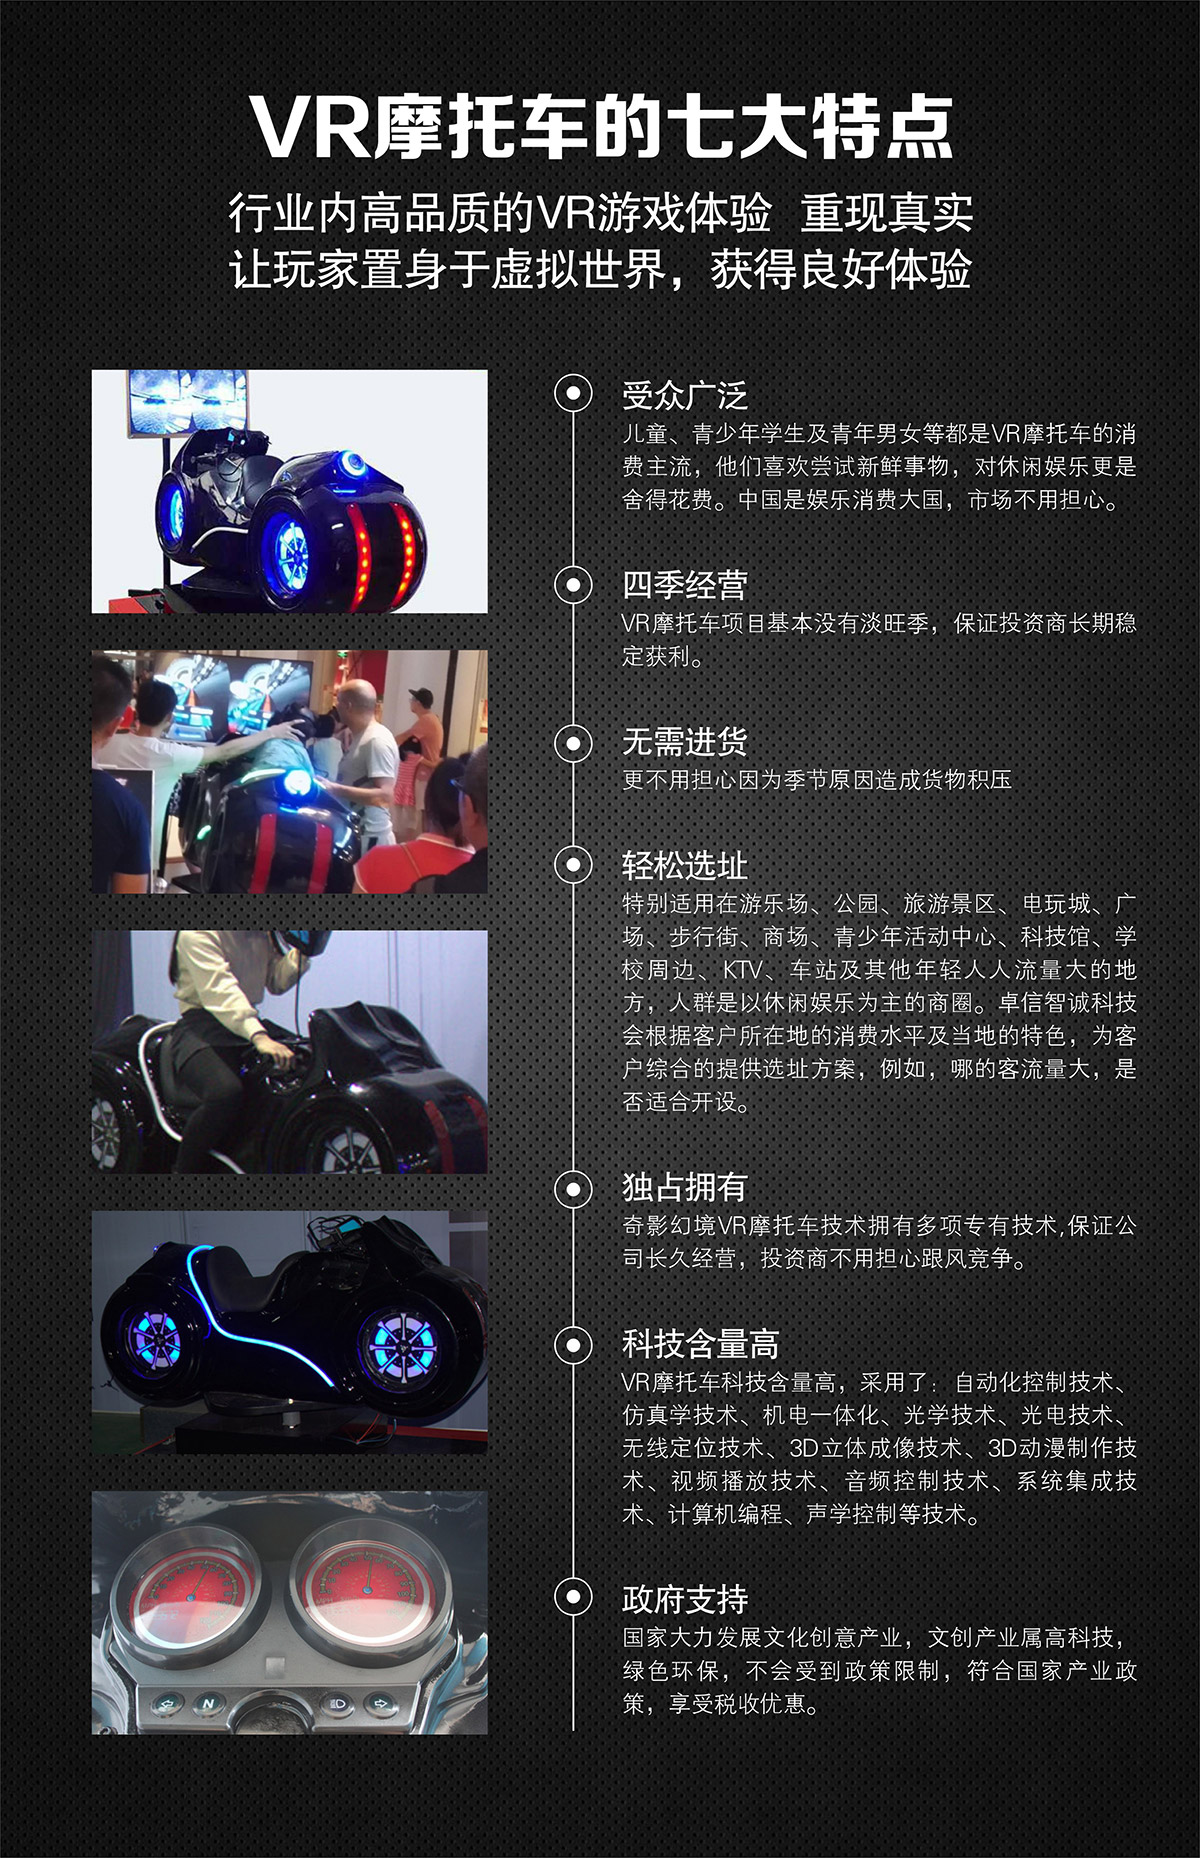 奇影幻境VR摩托车特点高品质游戏体验.jpg